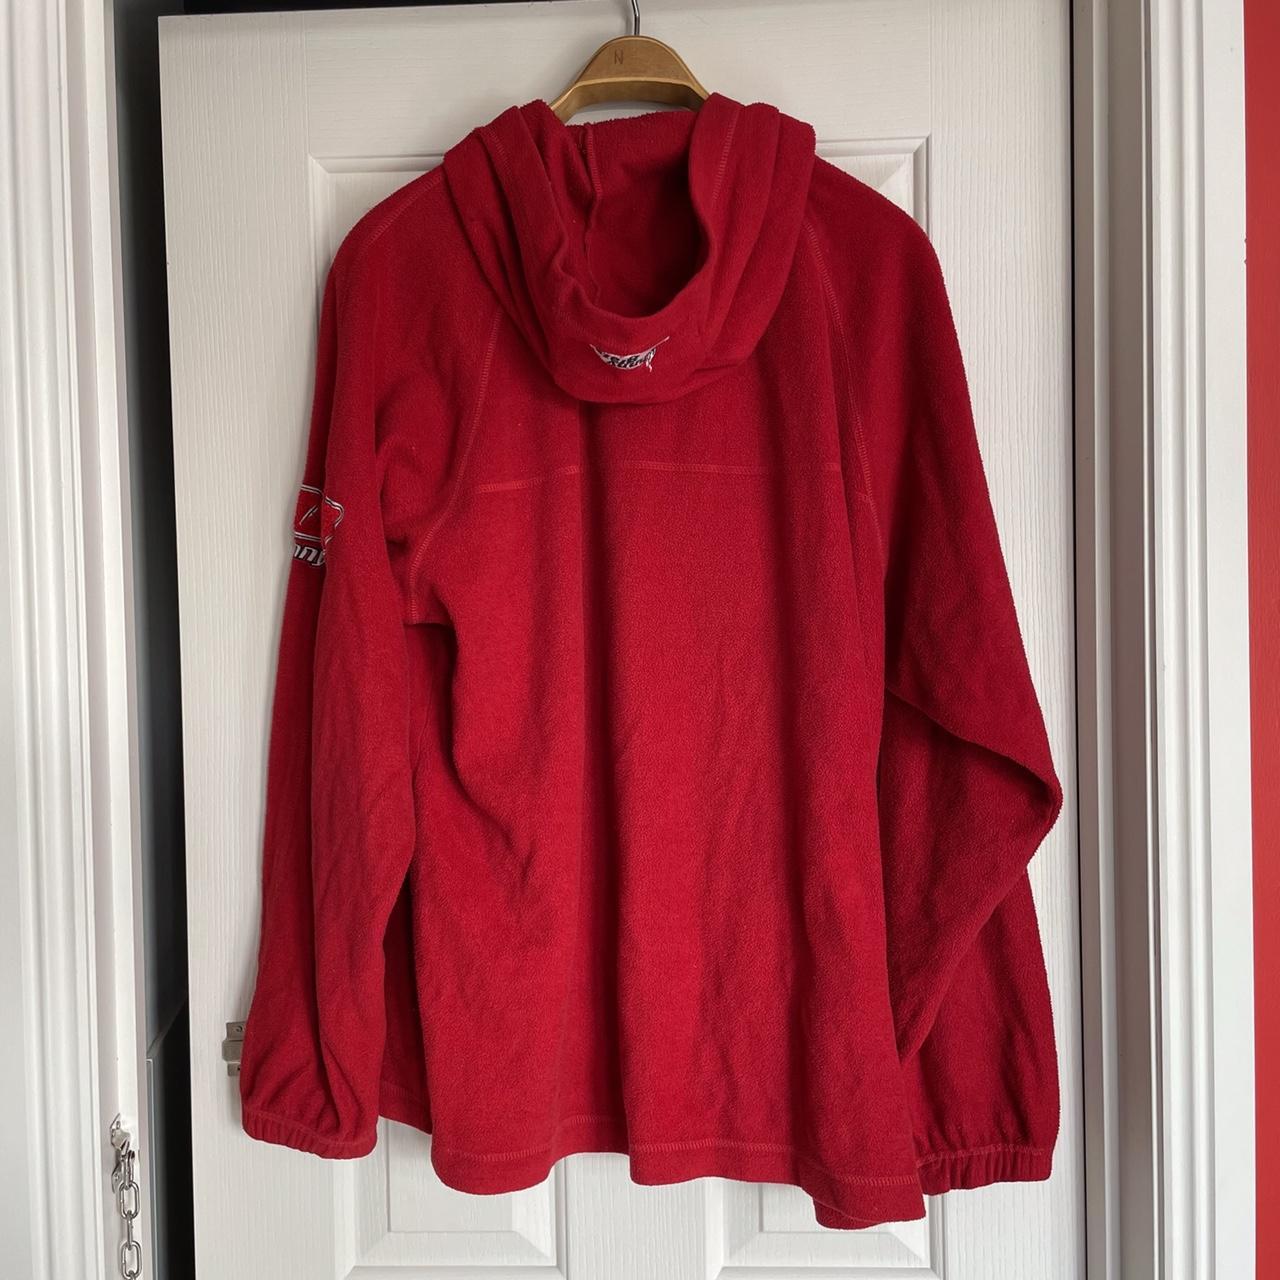 Vintage red polar fleece hoodie by Johnny... - Depop